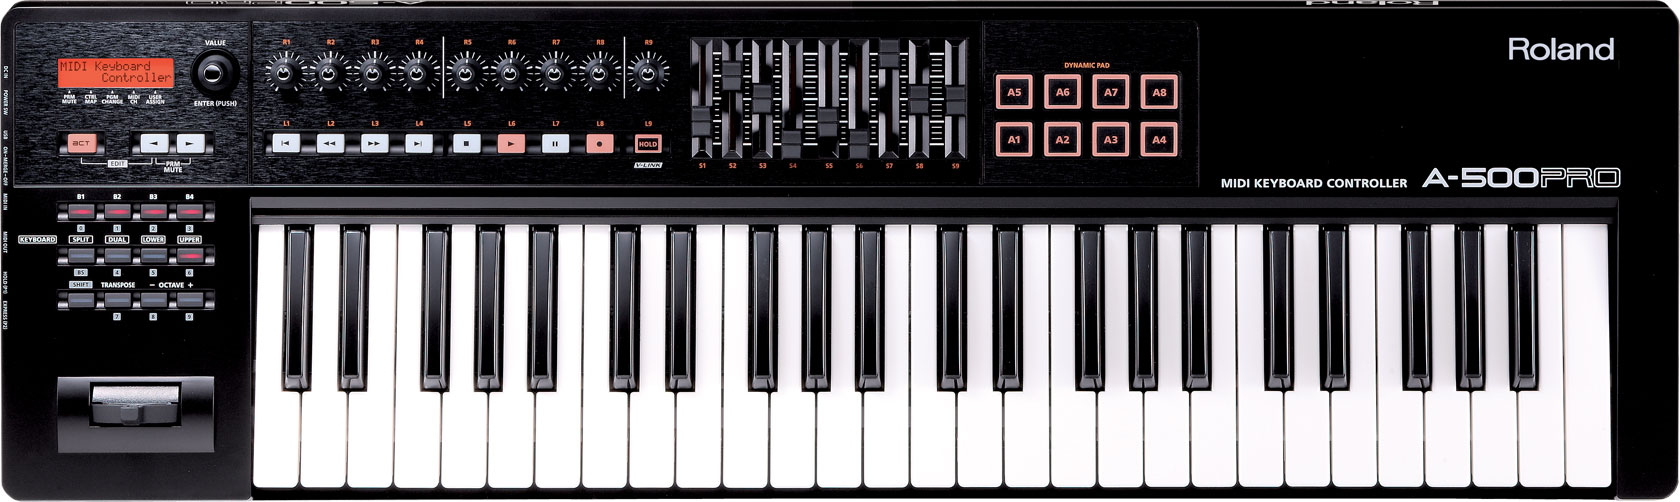 Roland A-500PRO 49-key MIDI Keyboard Controller